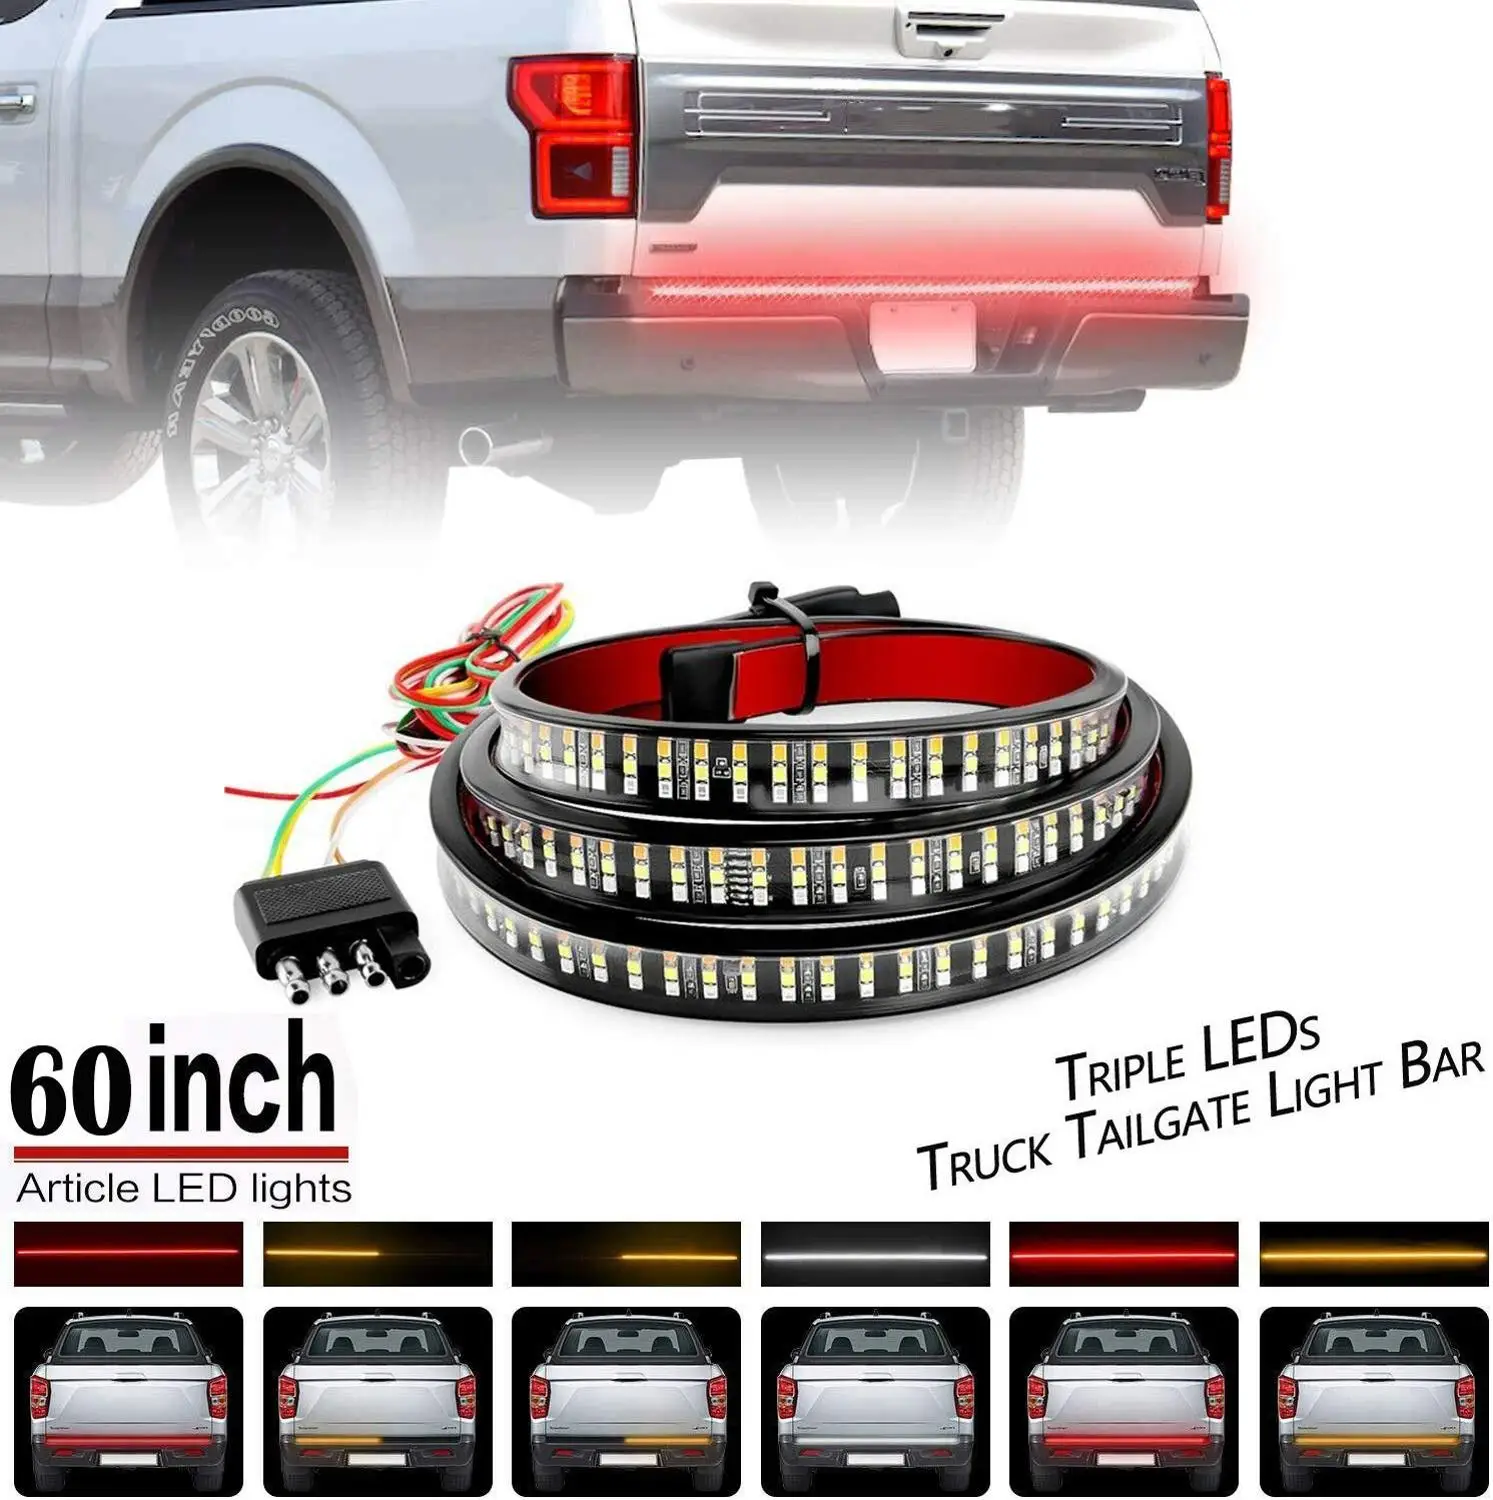 Flexible 5 Function LED Strip Tailgate Bar Truck Brake Reverse Signal Light 